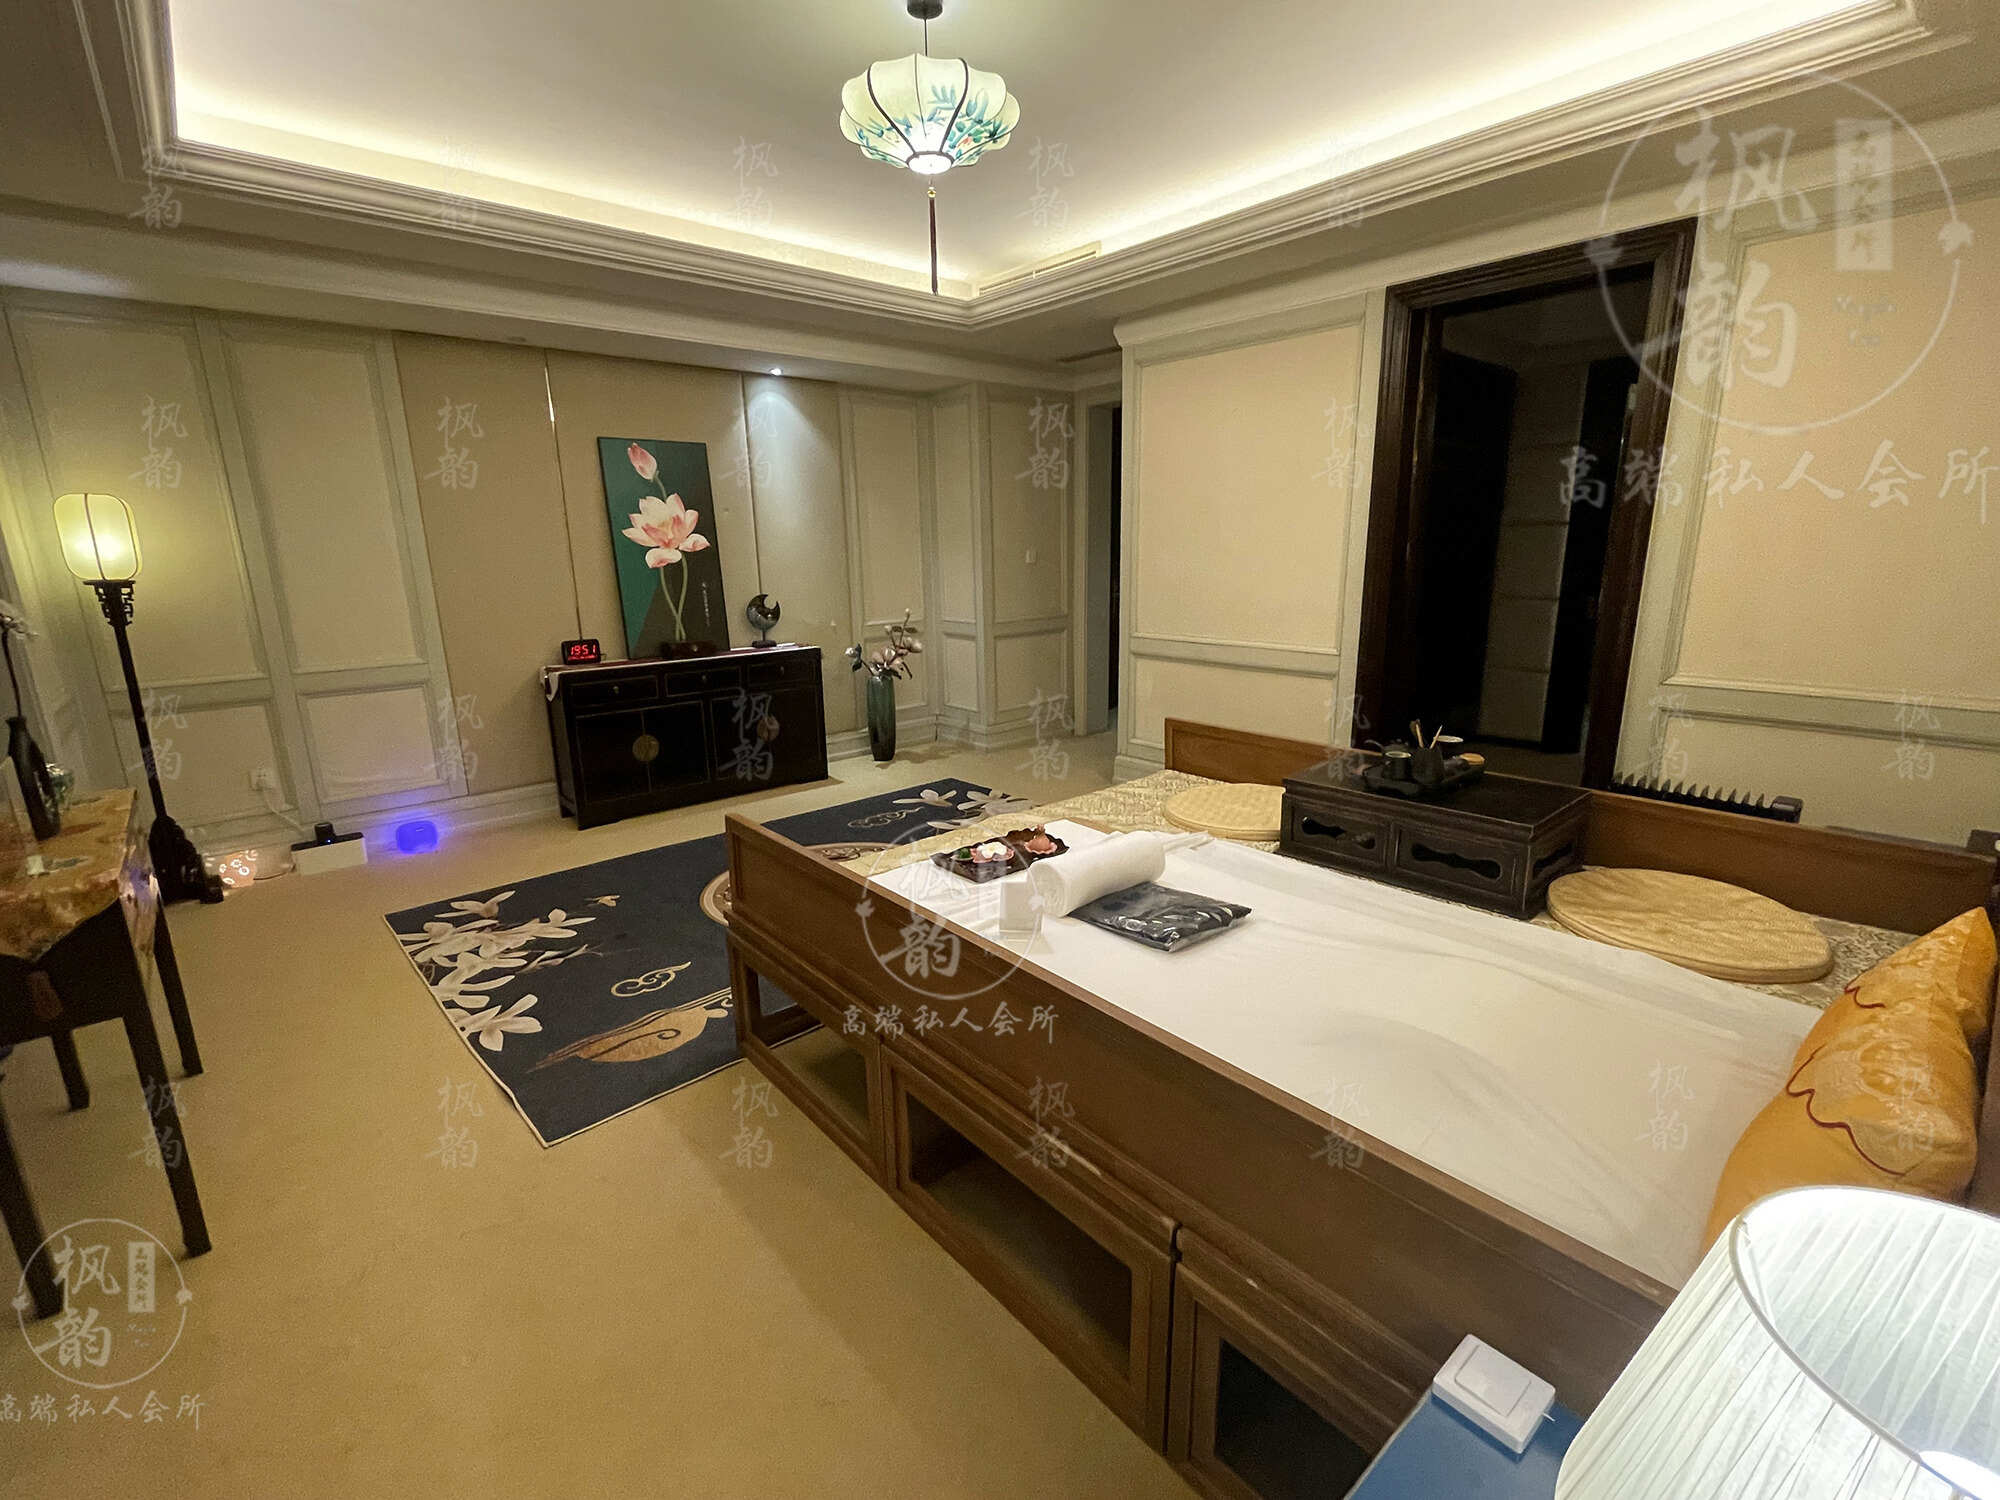 十堰天津渔阳鼓楼人气优选沐足会馆房间也很干净，舒适的spa体验